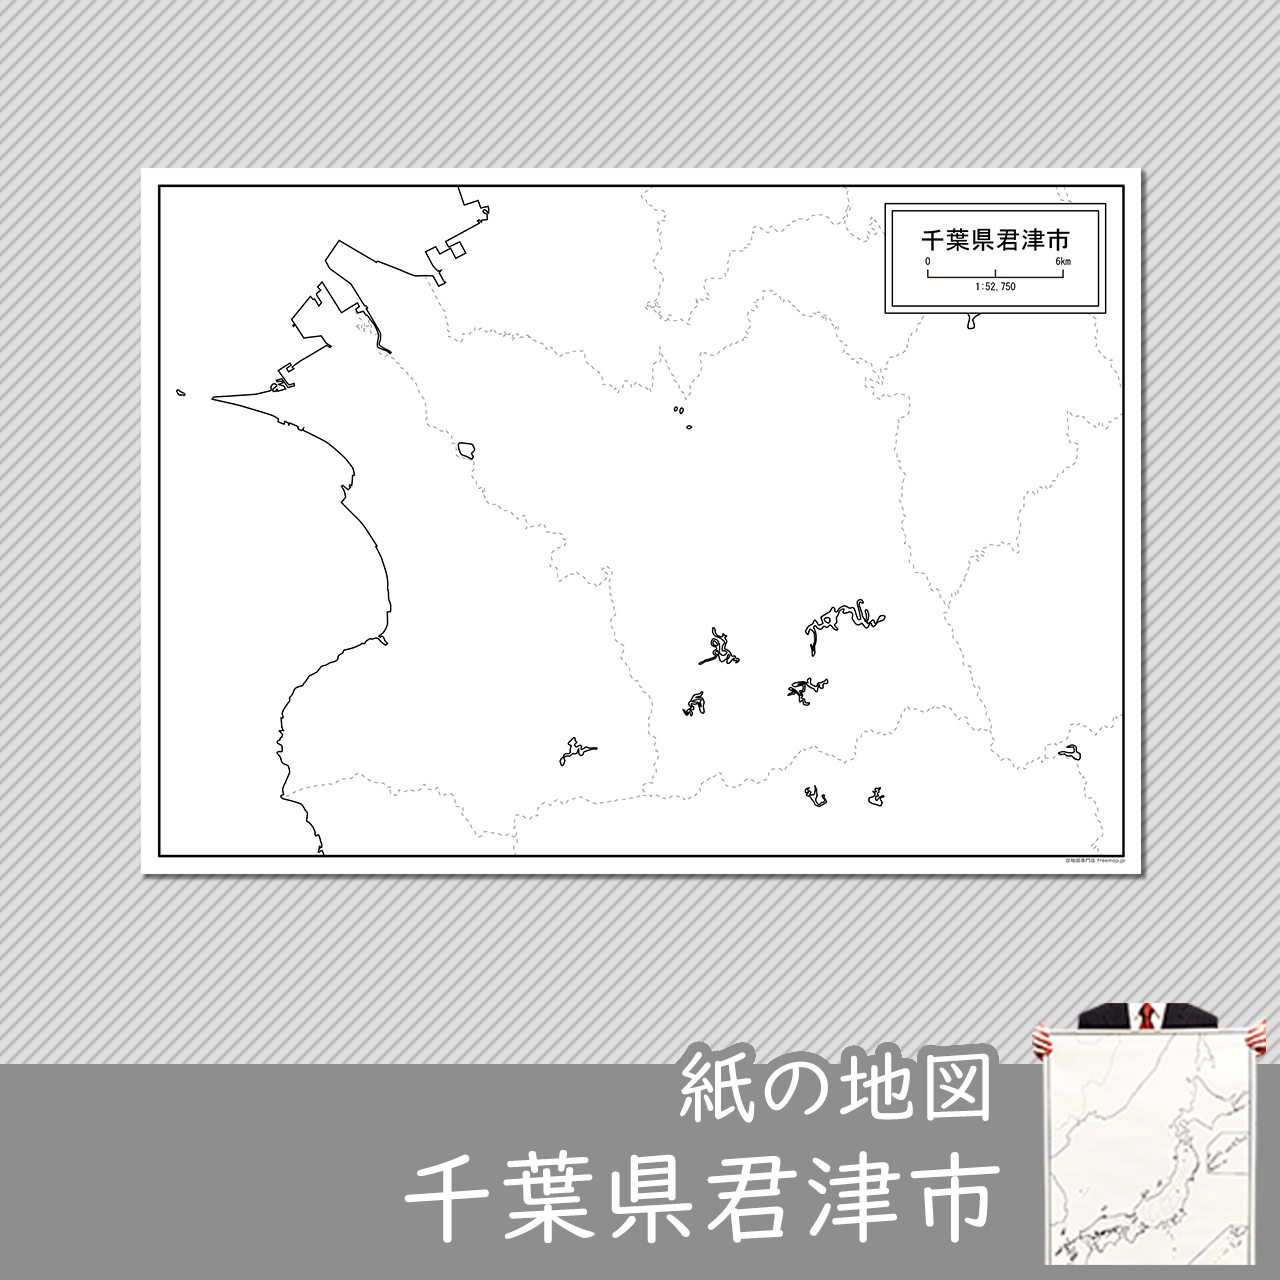 君津市の紙の白地図のサムネイル